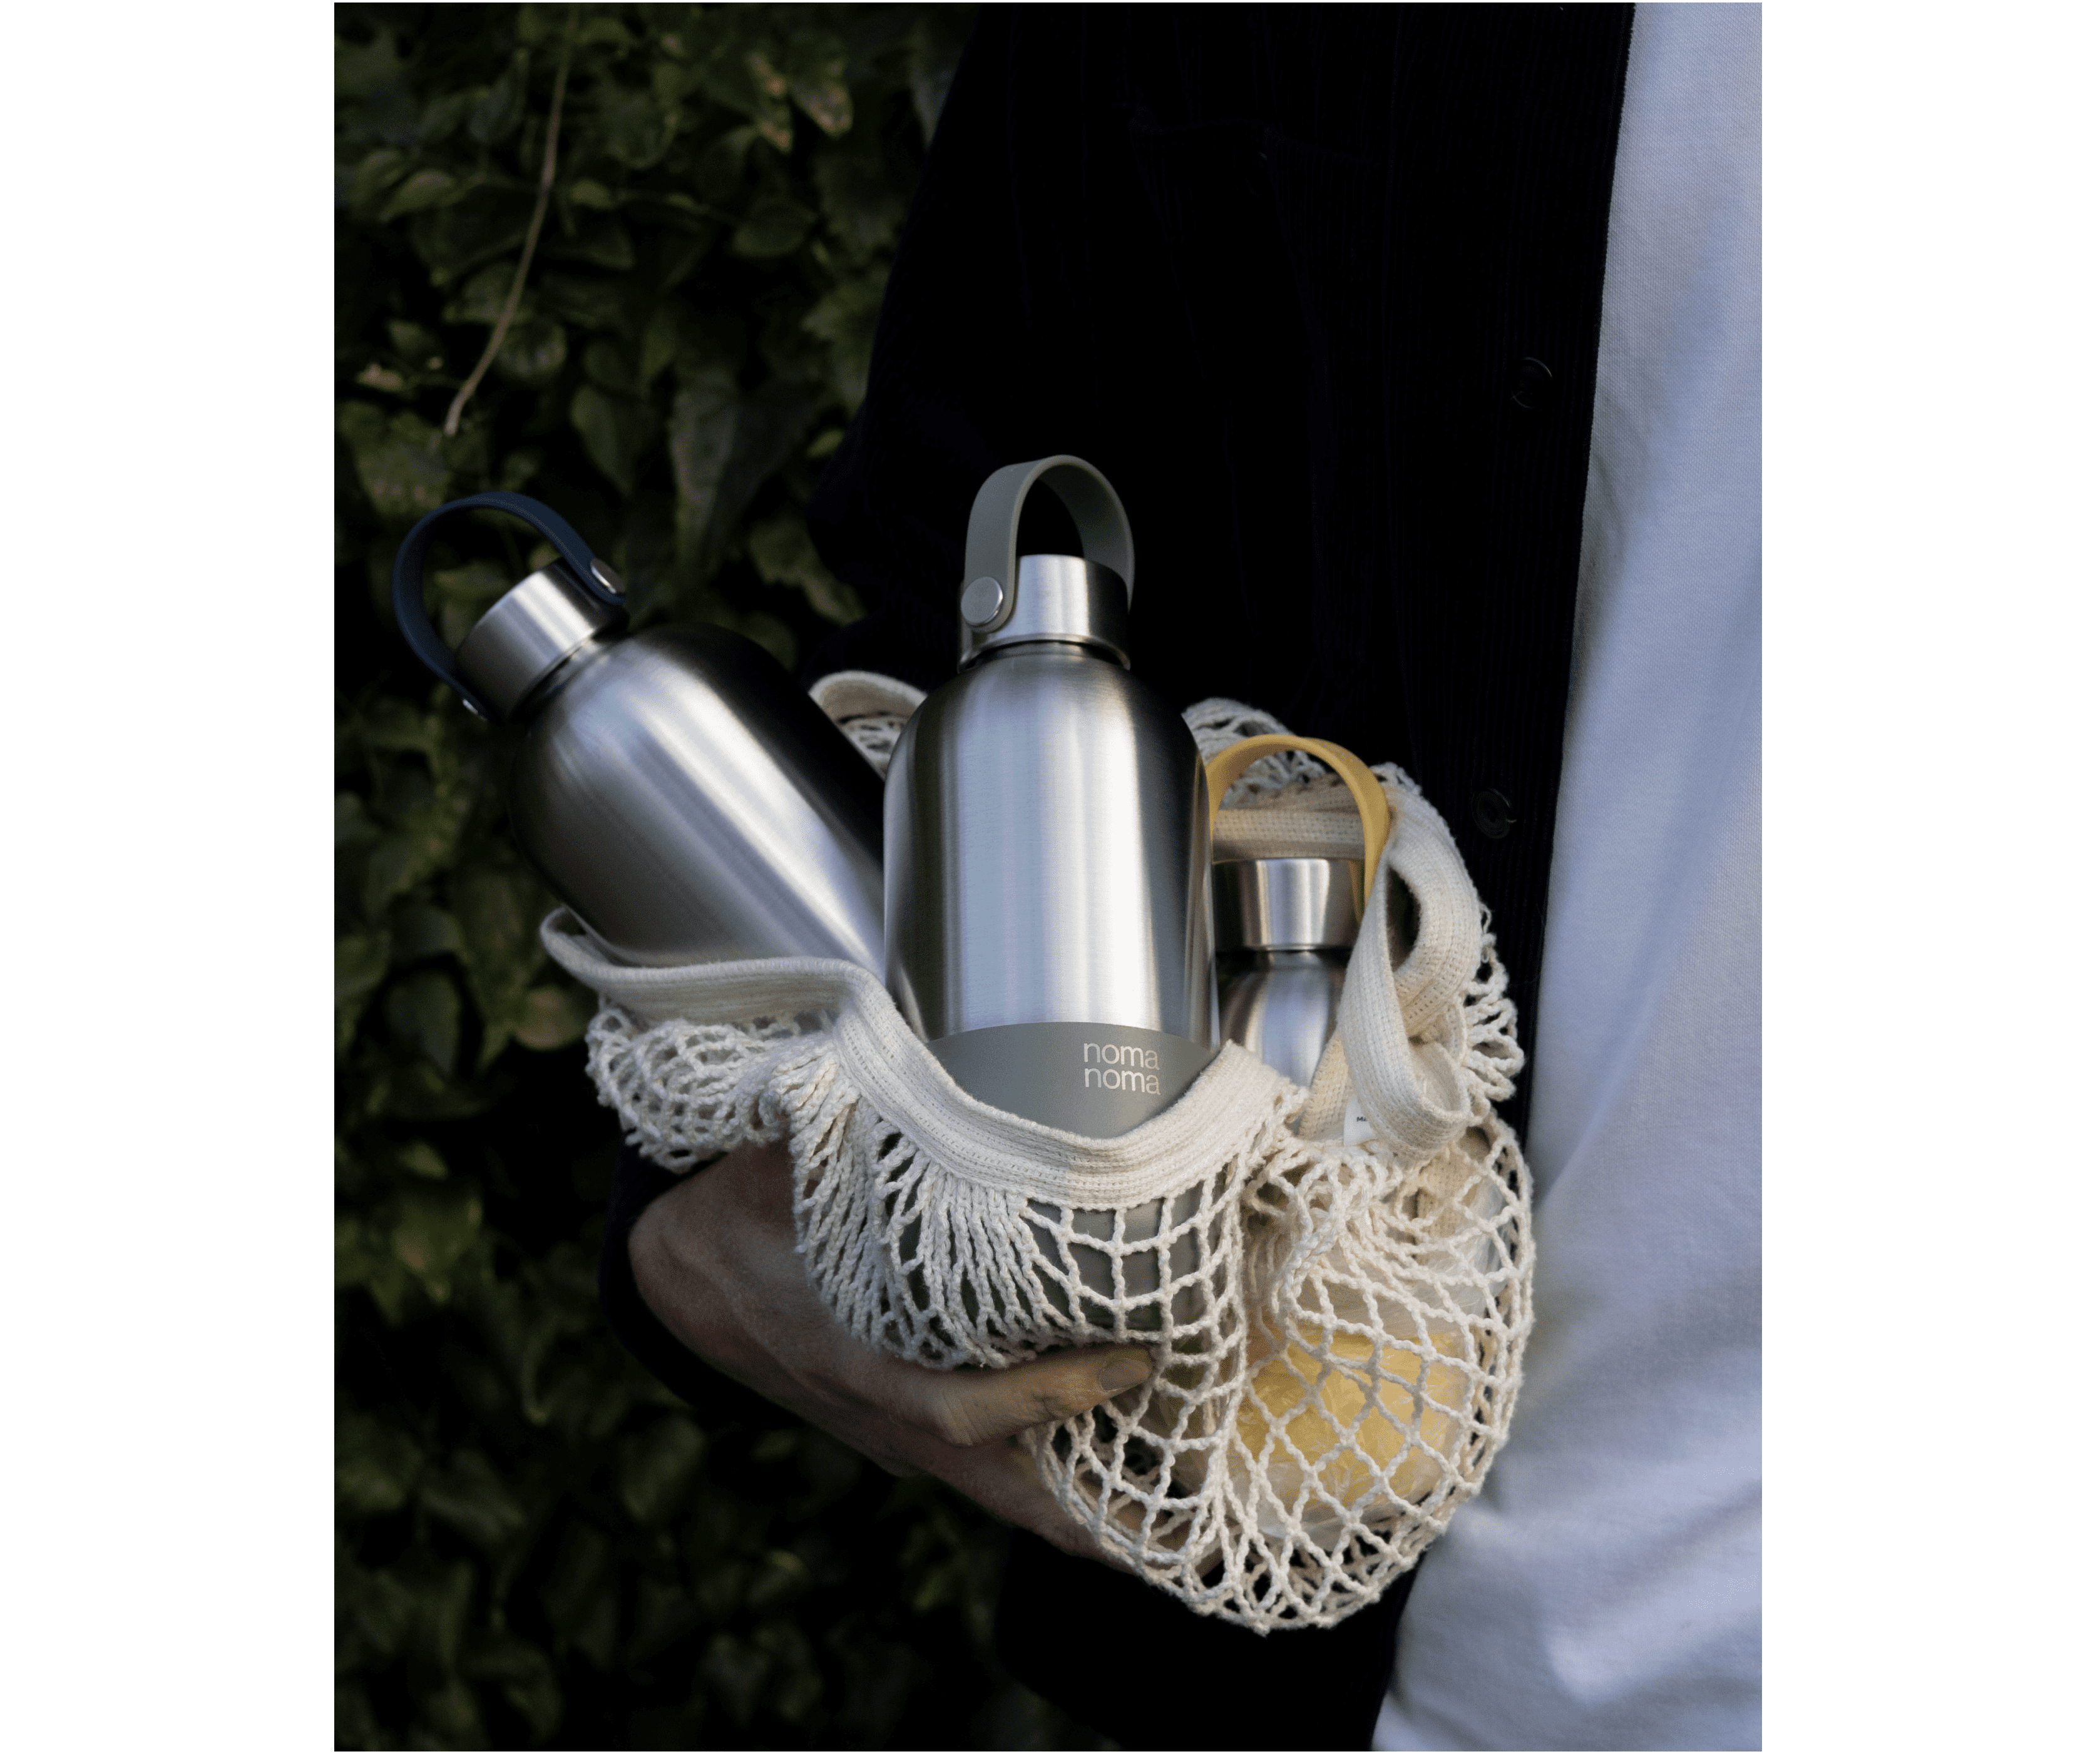 Drei noma noma Isolierflaschen liegen in einem Jutebeutel und werden von einem jemanden im Arm getragen.